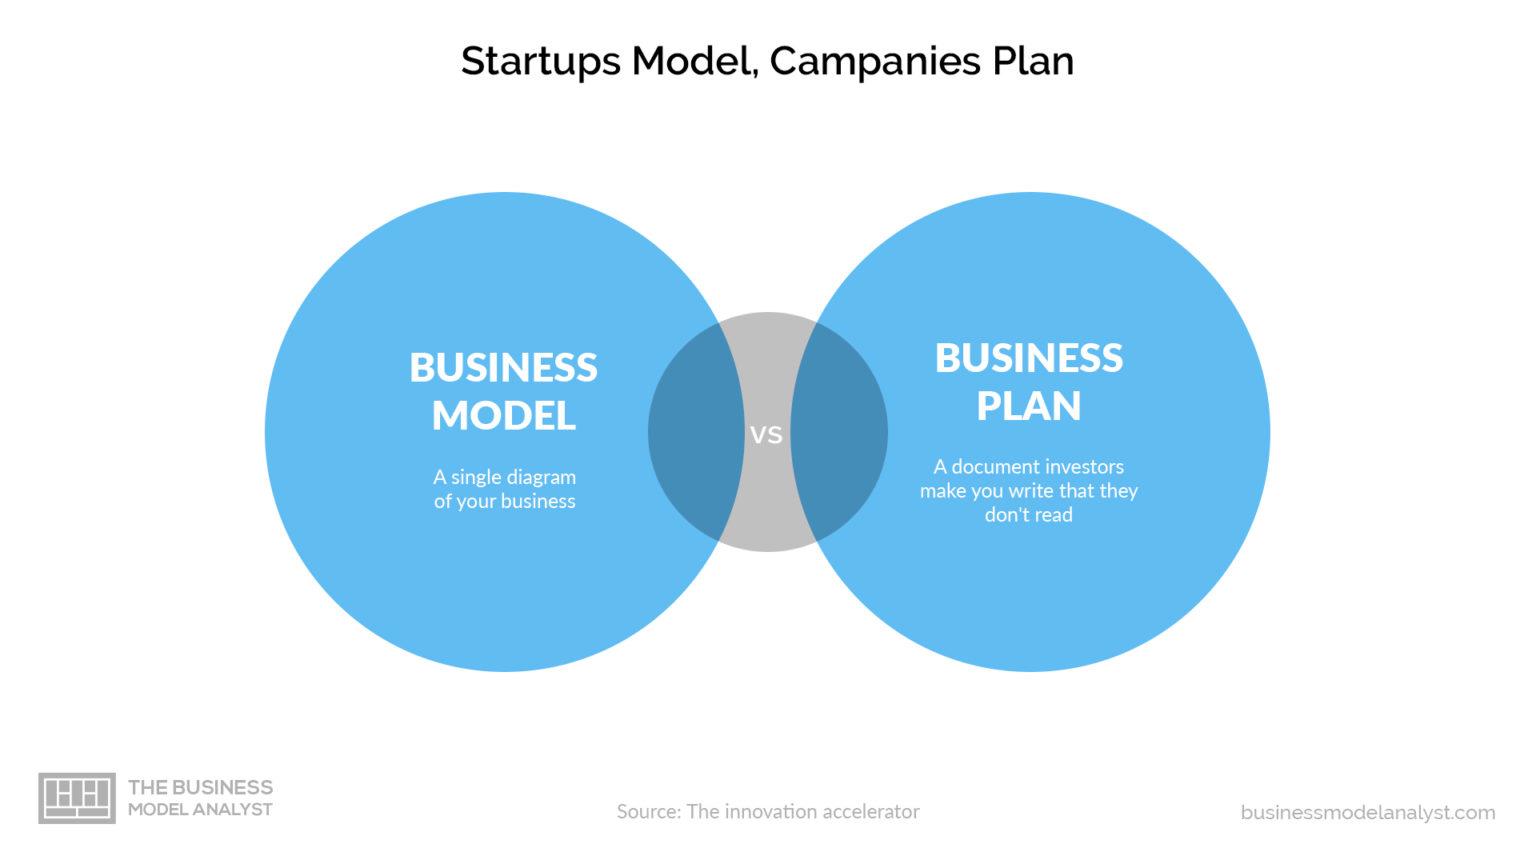 business plan vs business model